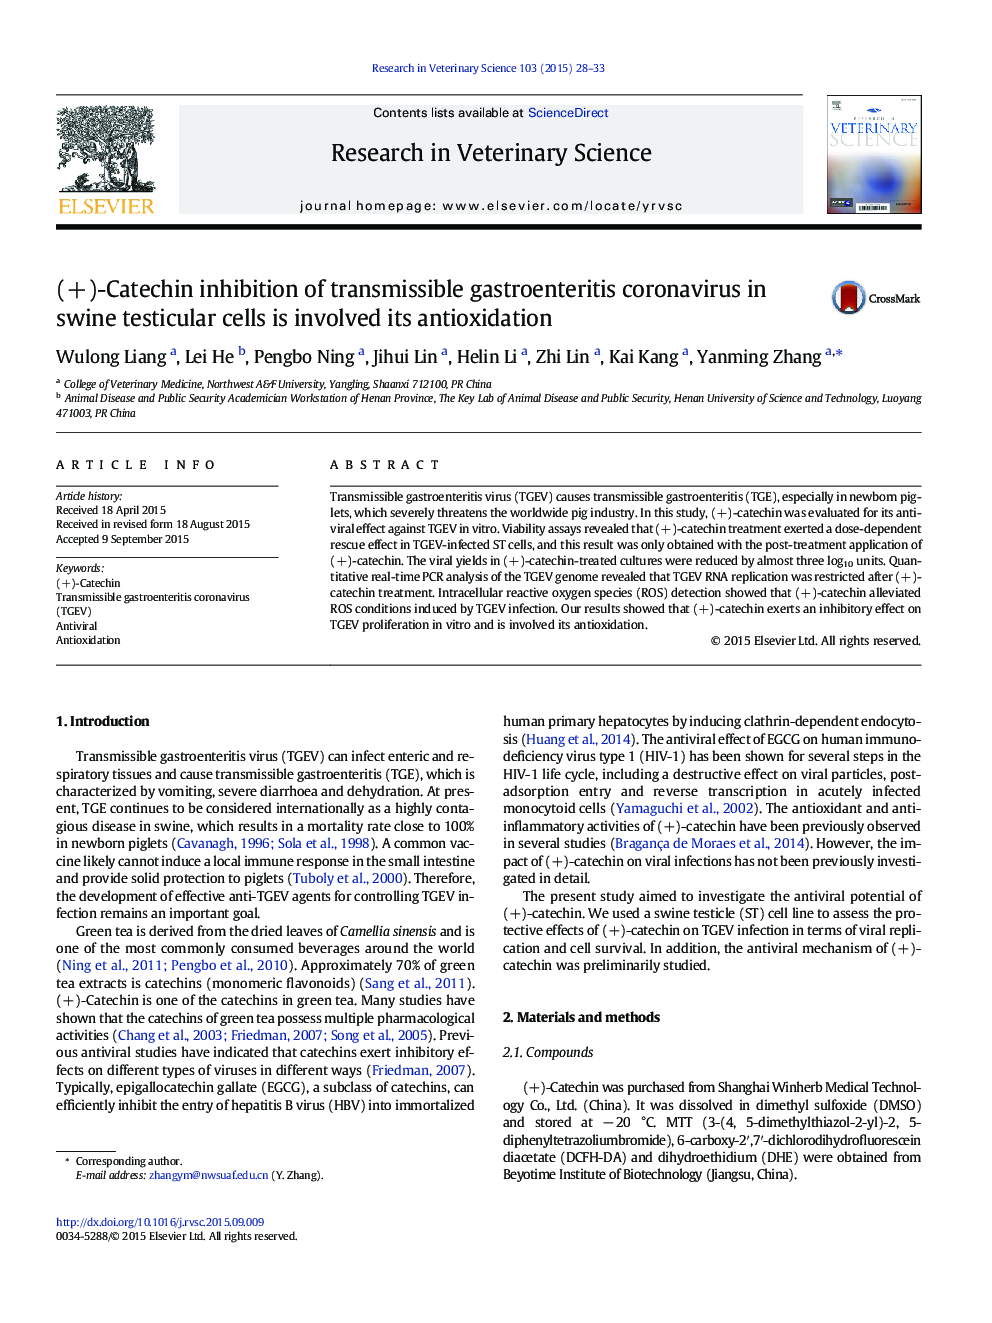 (+) - مهار کورتونی از گاستروانتریت کبدی پروتئینی در سلول های بیضه خوک شامل آنتی اکسید شدن آن می شود 